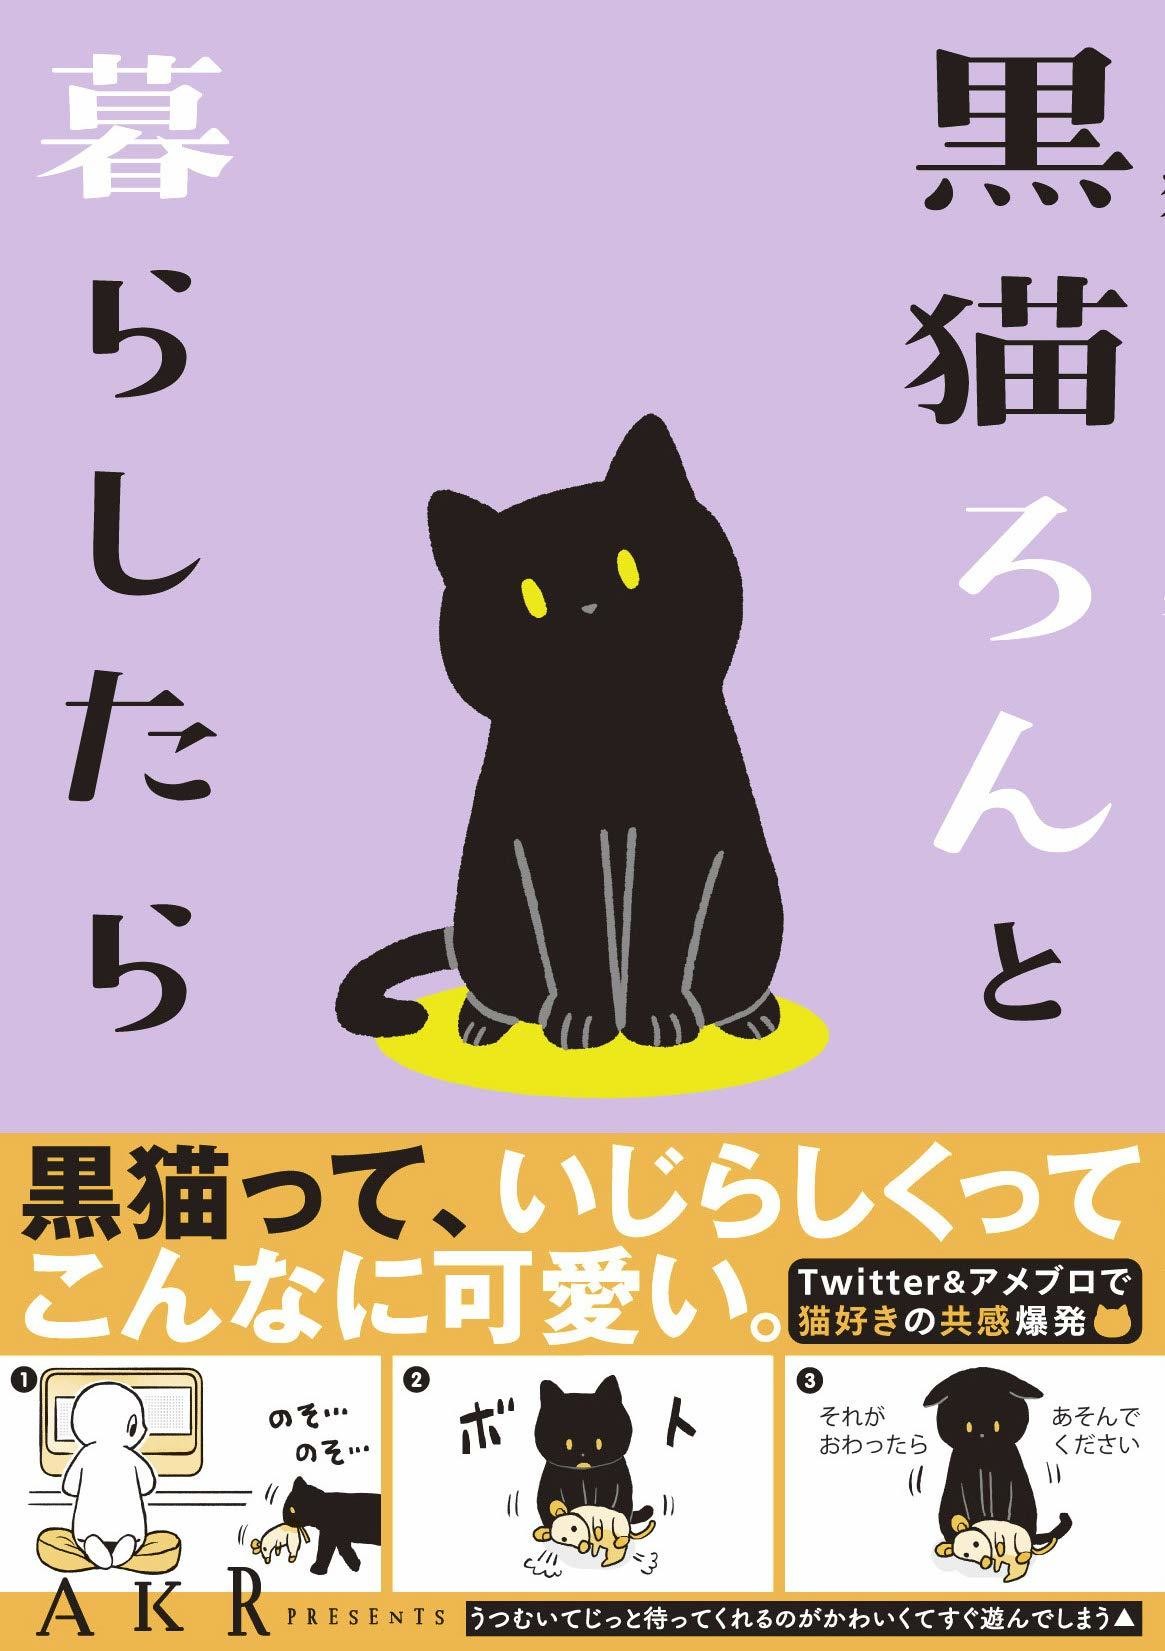 Twitterで話題の猫絵日記が書籍化 黒猫ろんと暮らしたら が発売 ねこナビ